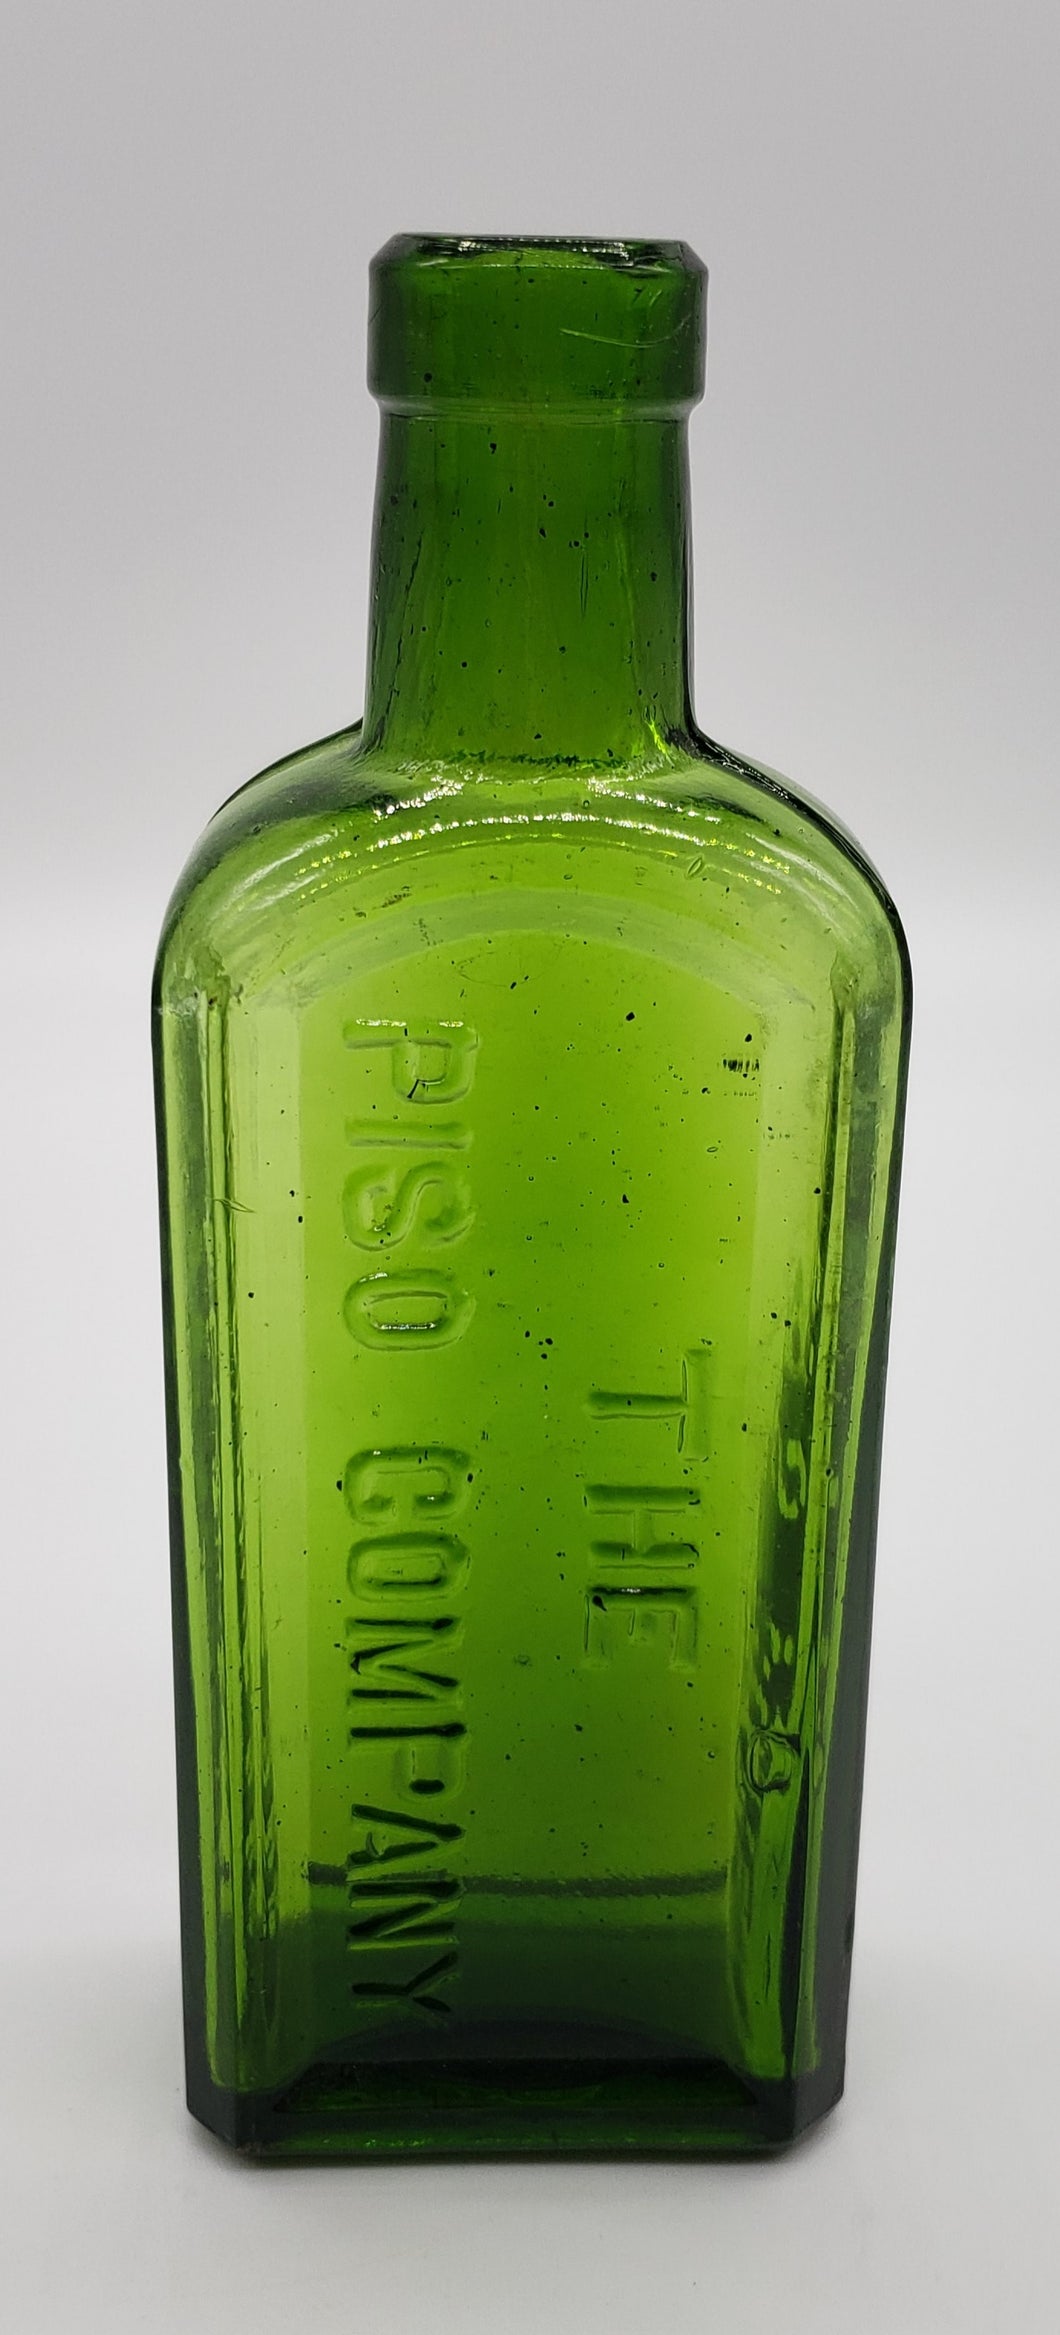 Piso's Cure Glass bottle